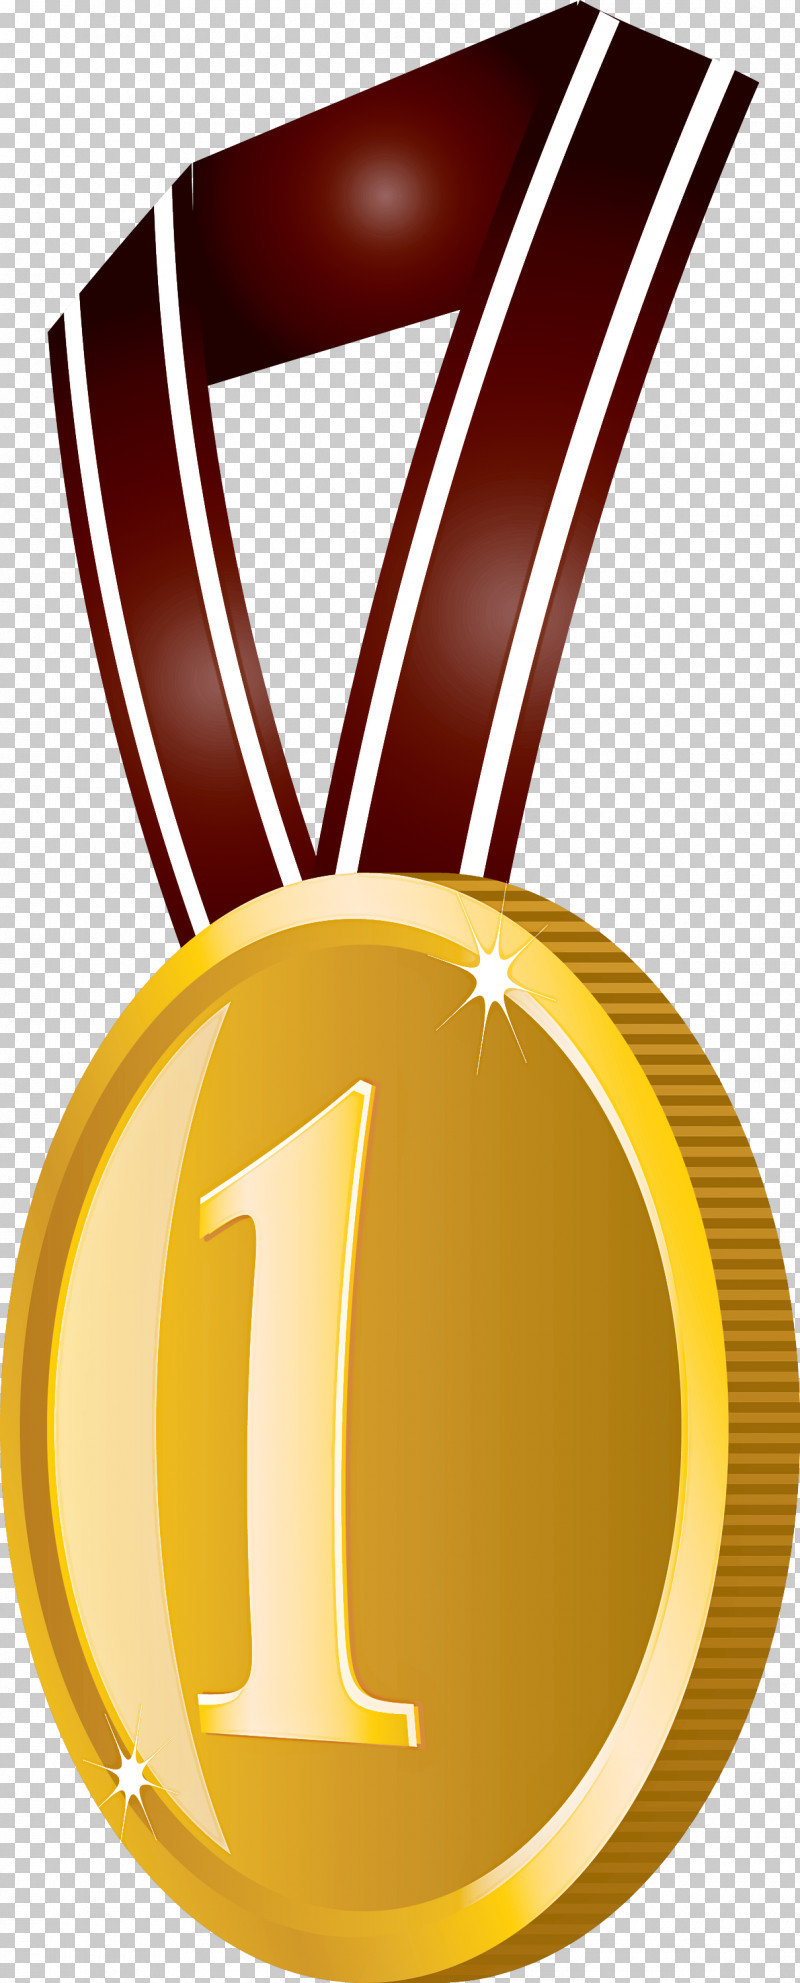 Gold Badge No 1 Badge Award Gold Badge PNG, Clipart, Award, Award Gold Badge, Gold, Gold Badge, Gold Medal Free PNG Download